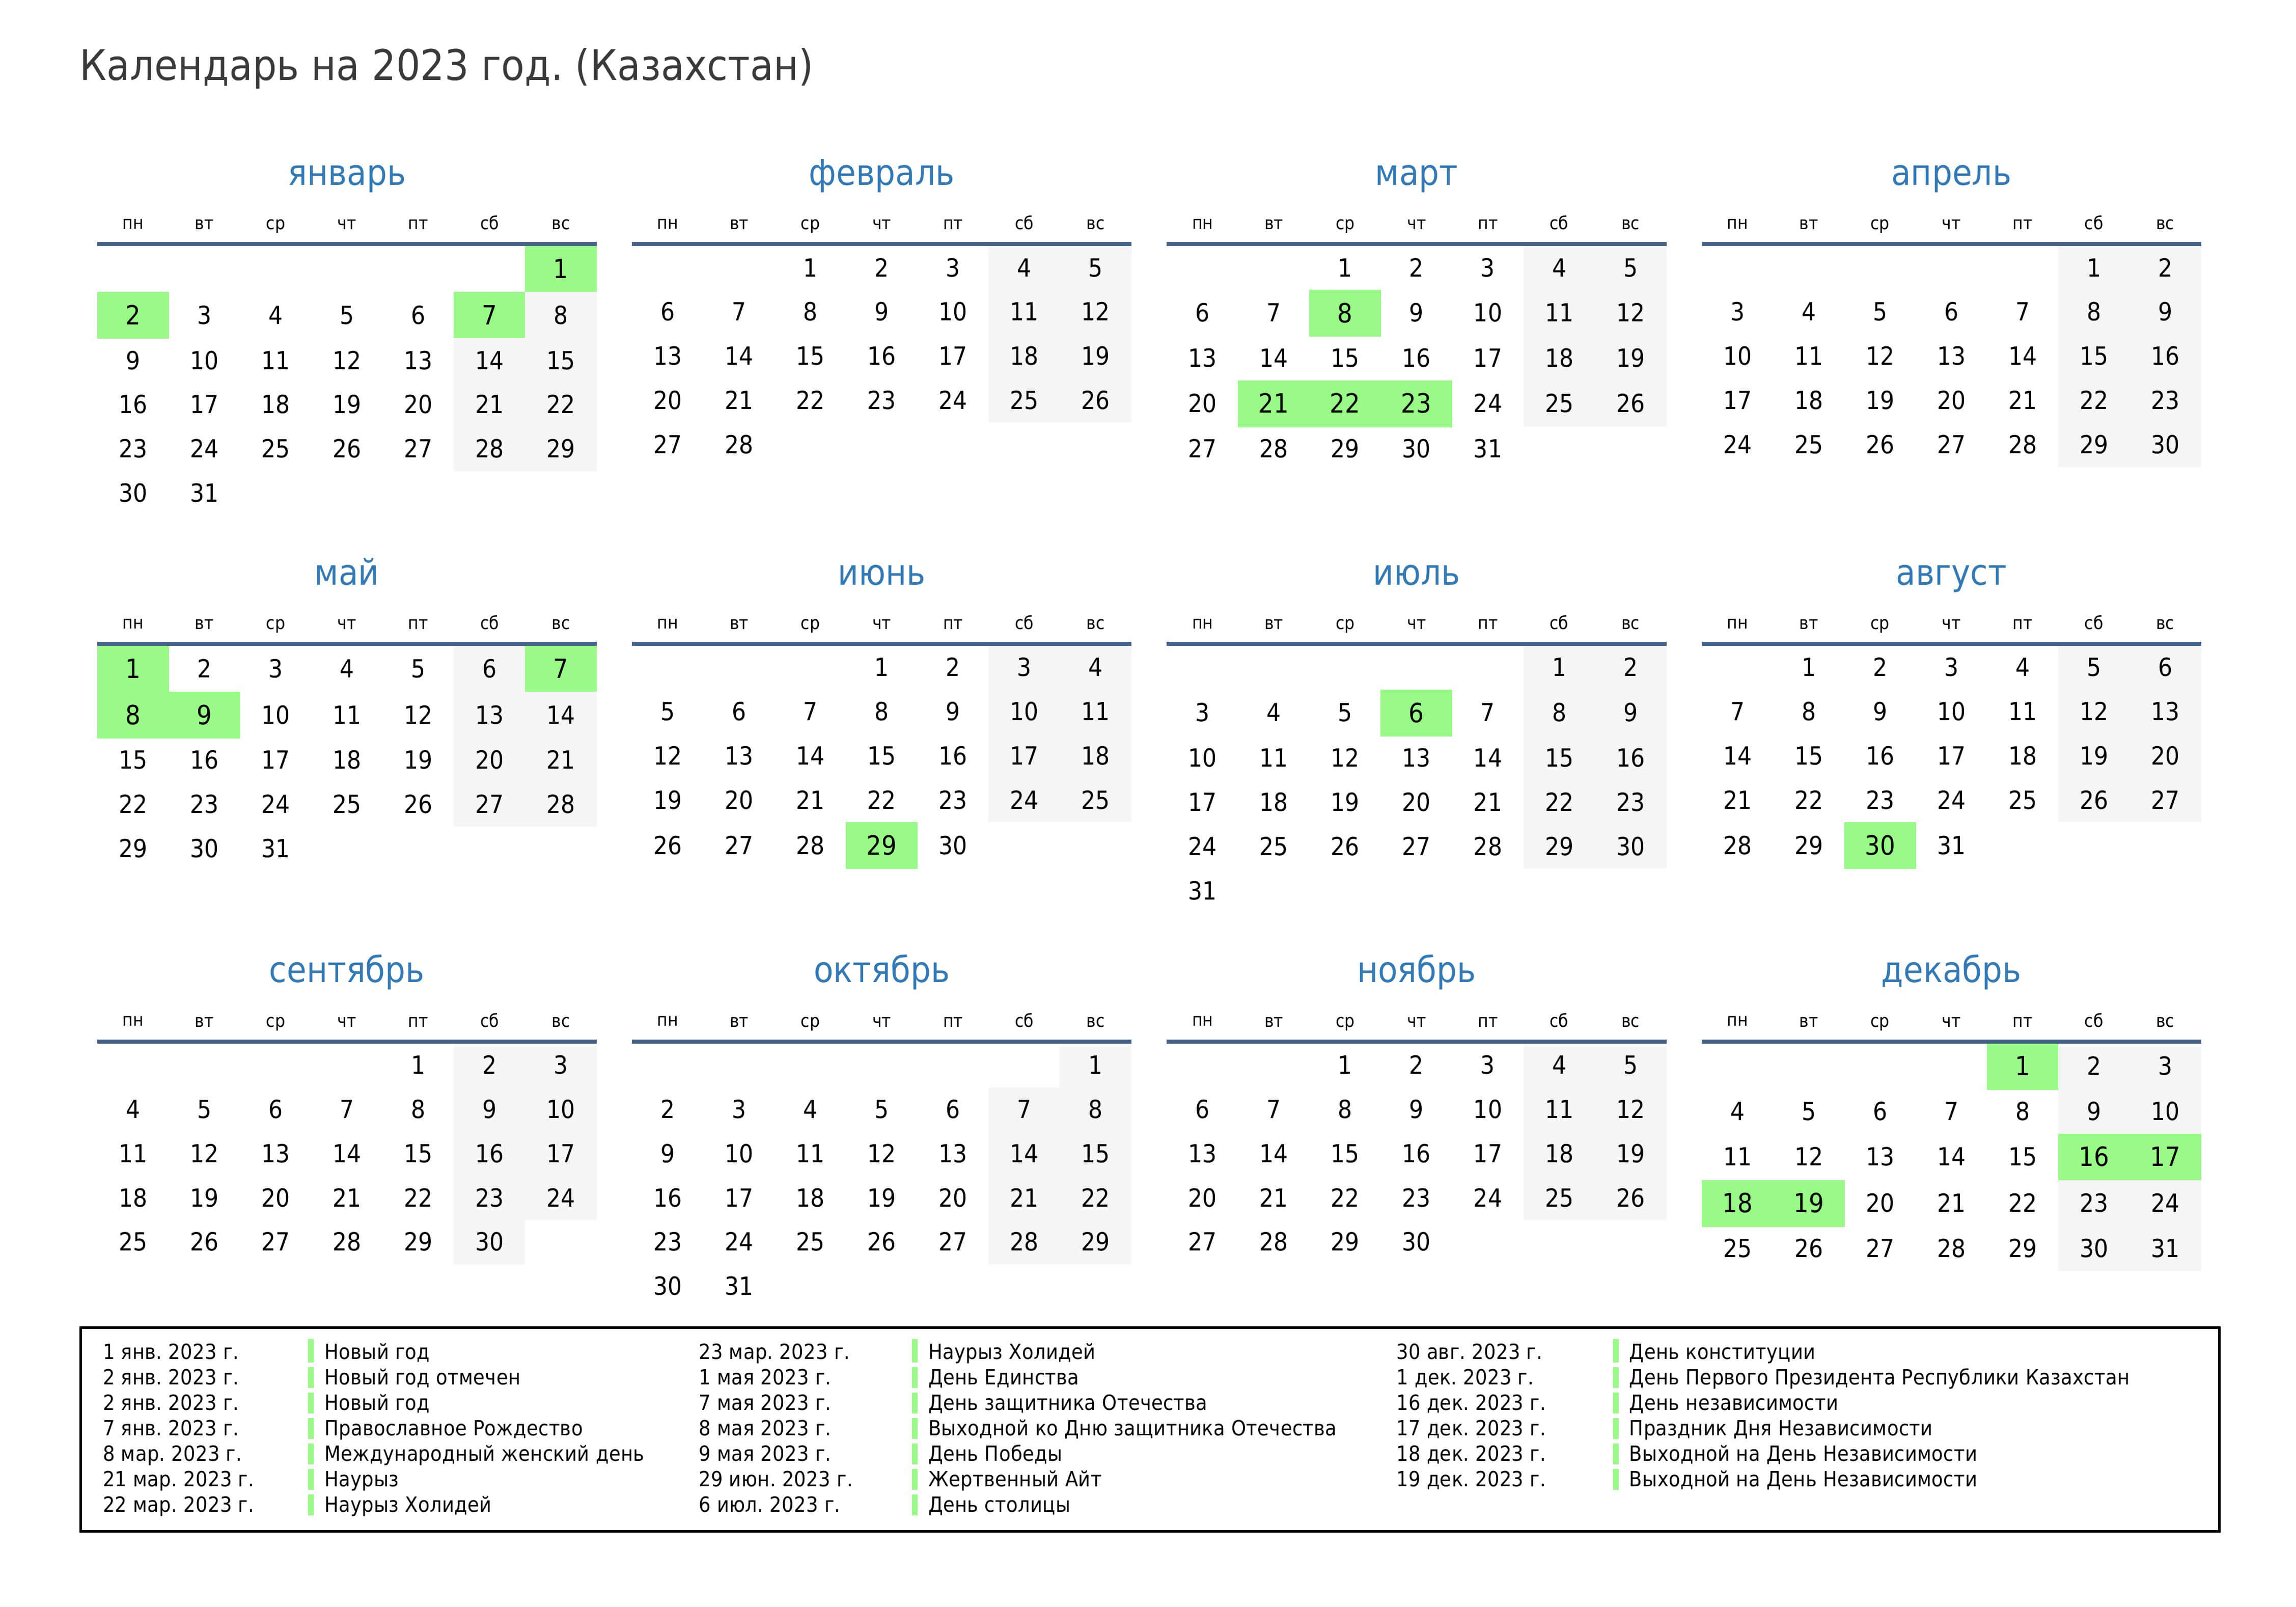 Производственный календарь выходных дней 2023